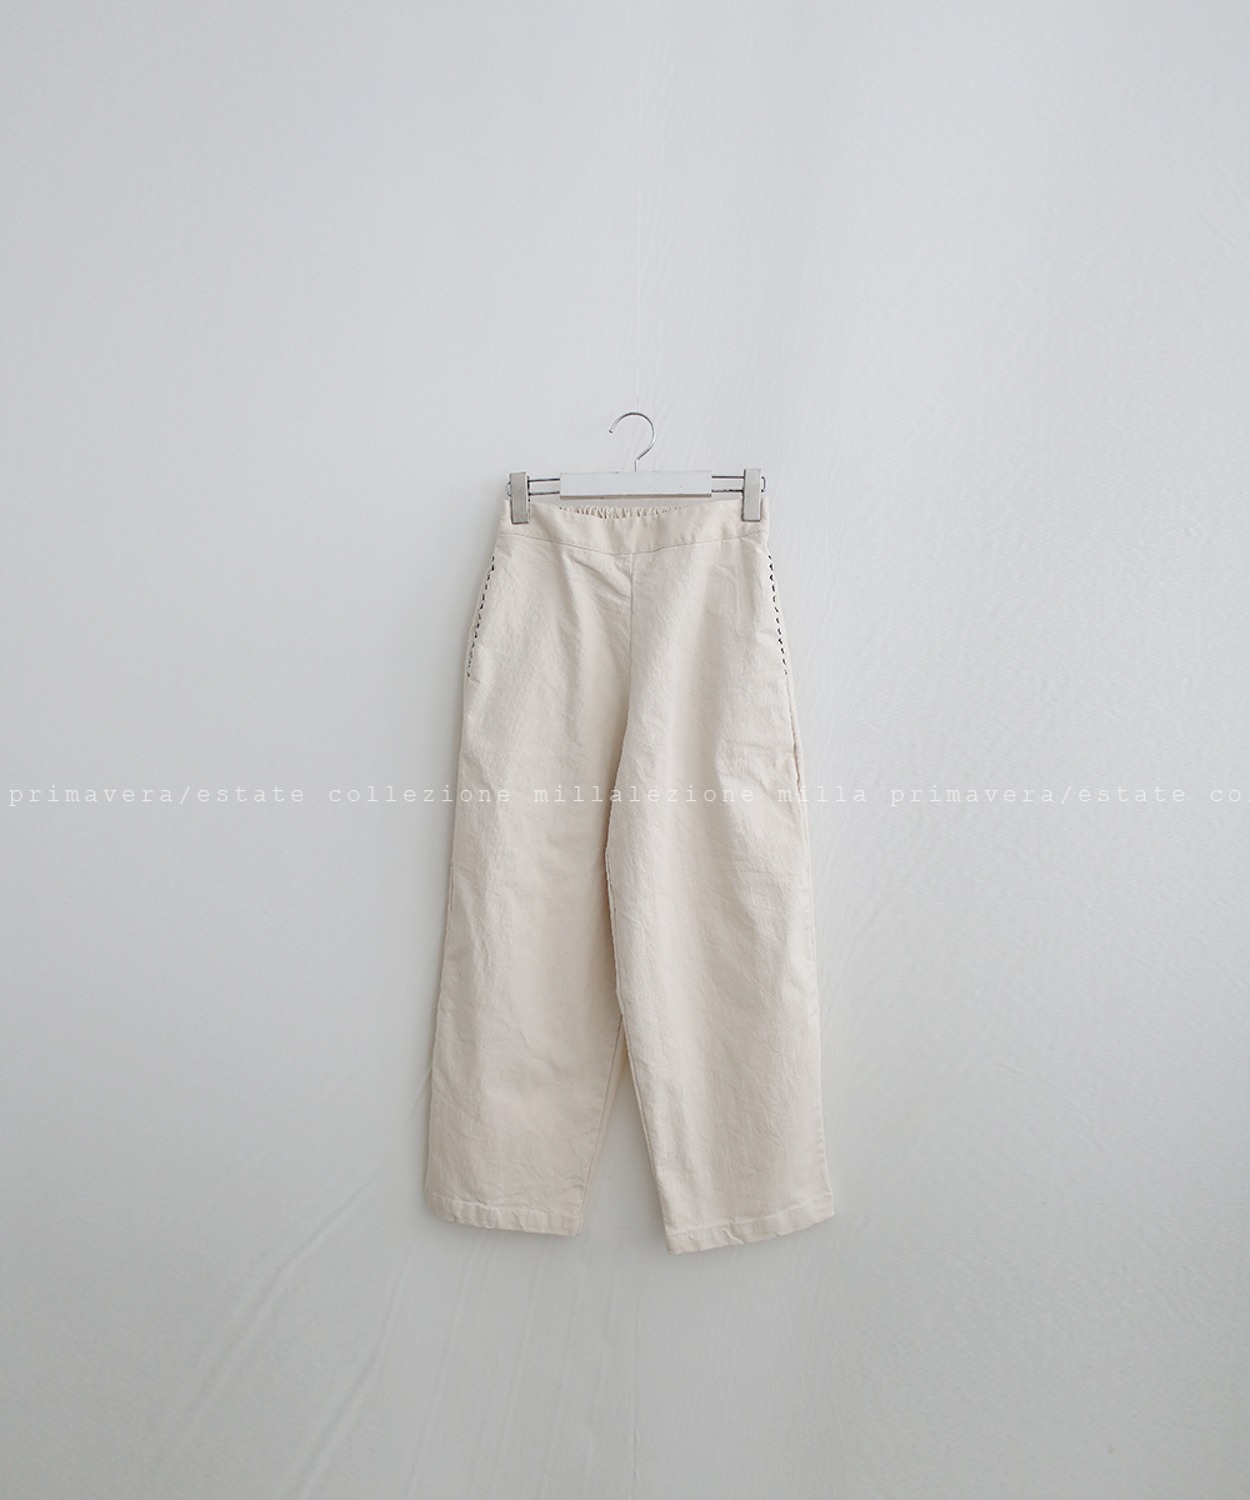 N°092 pants